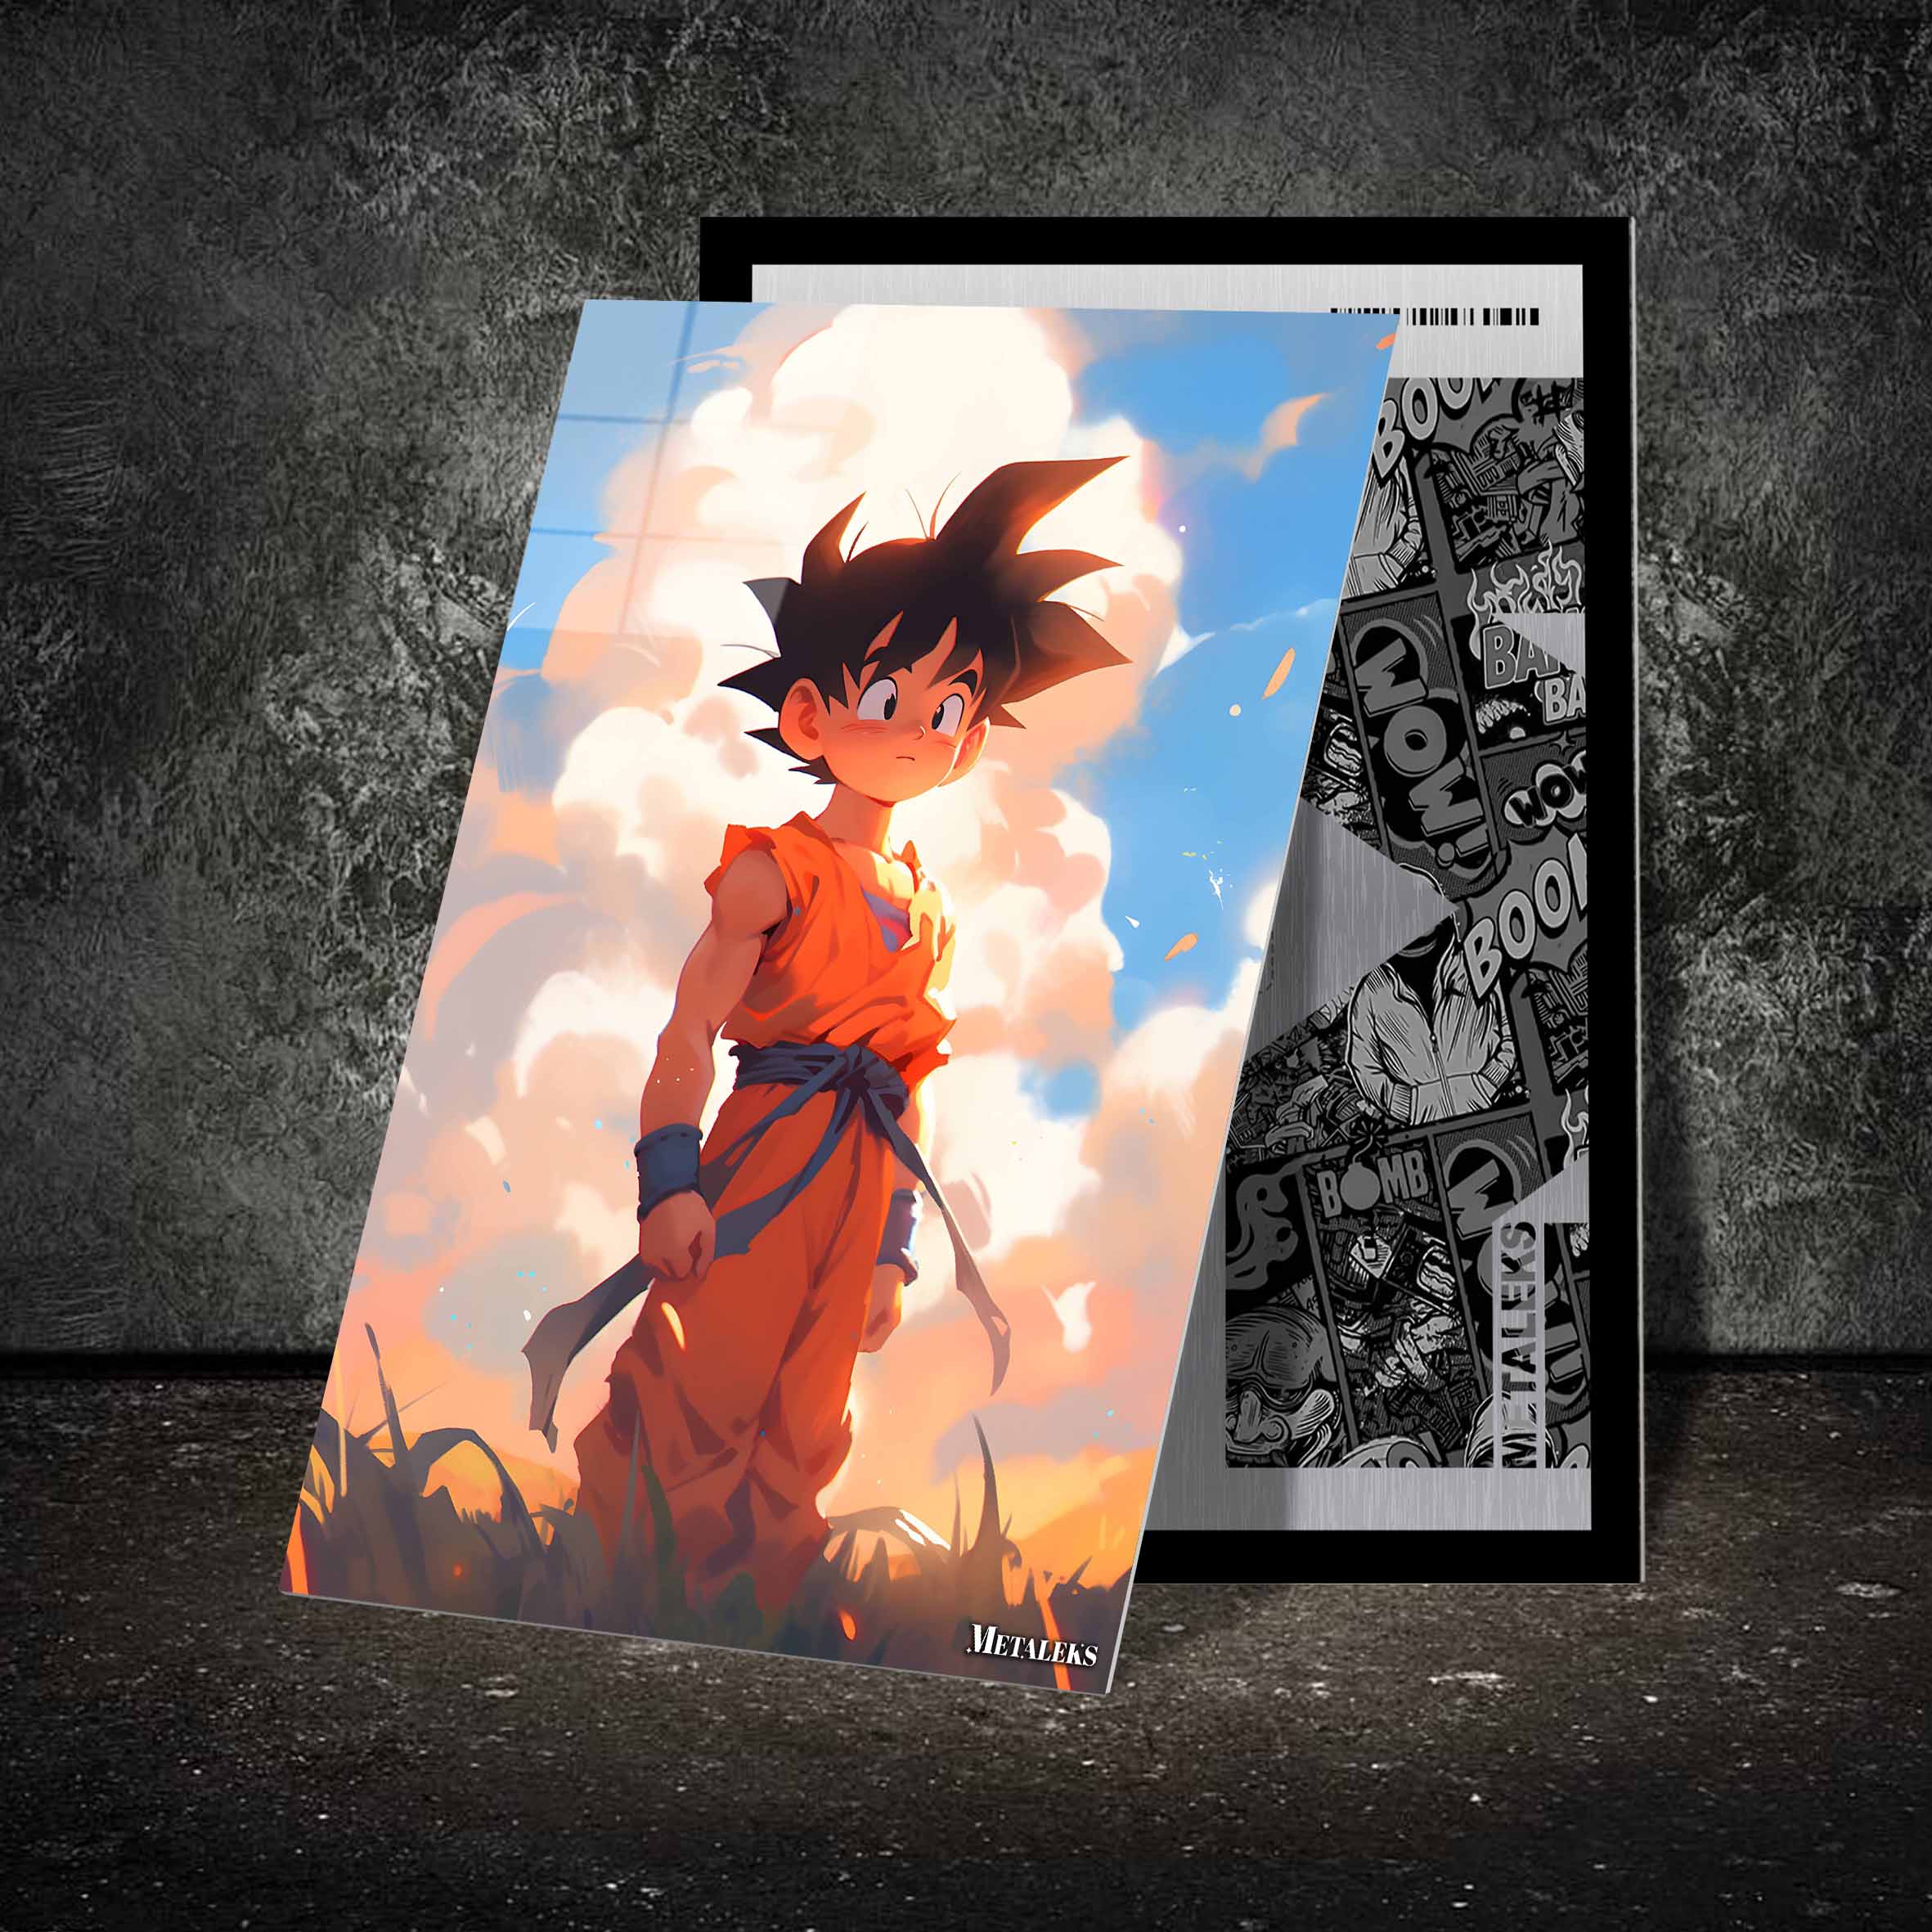 Goku chibi art in memories of toriyama-designed by @Vid_M@tion